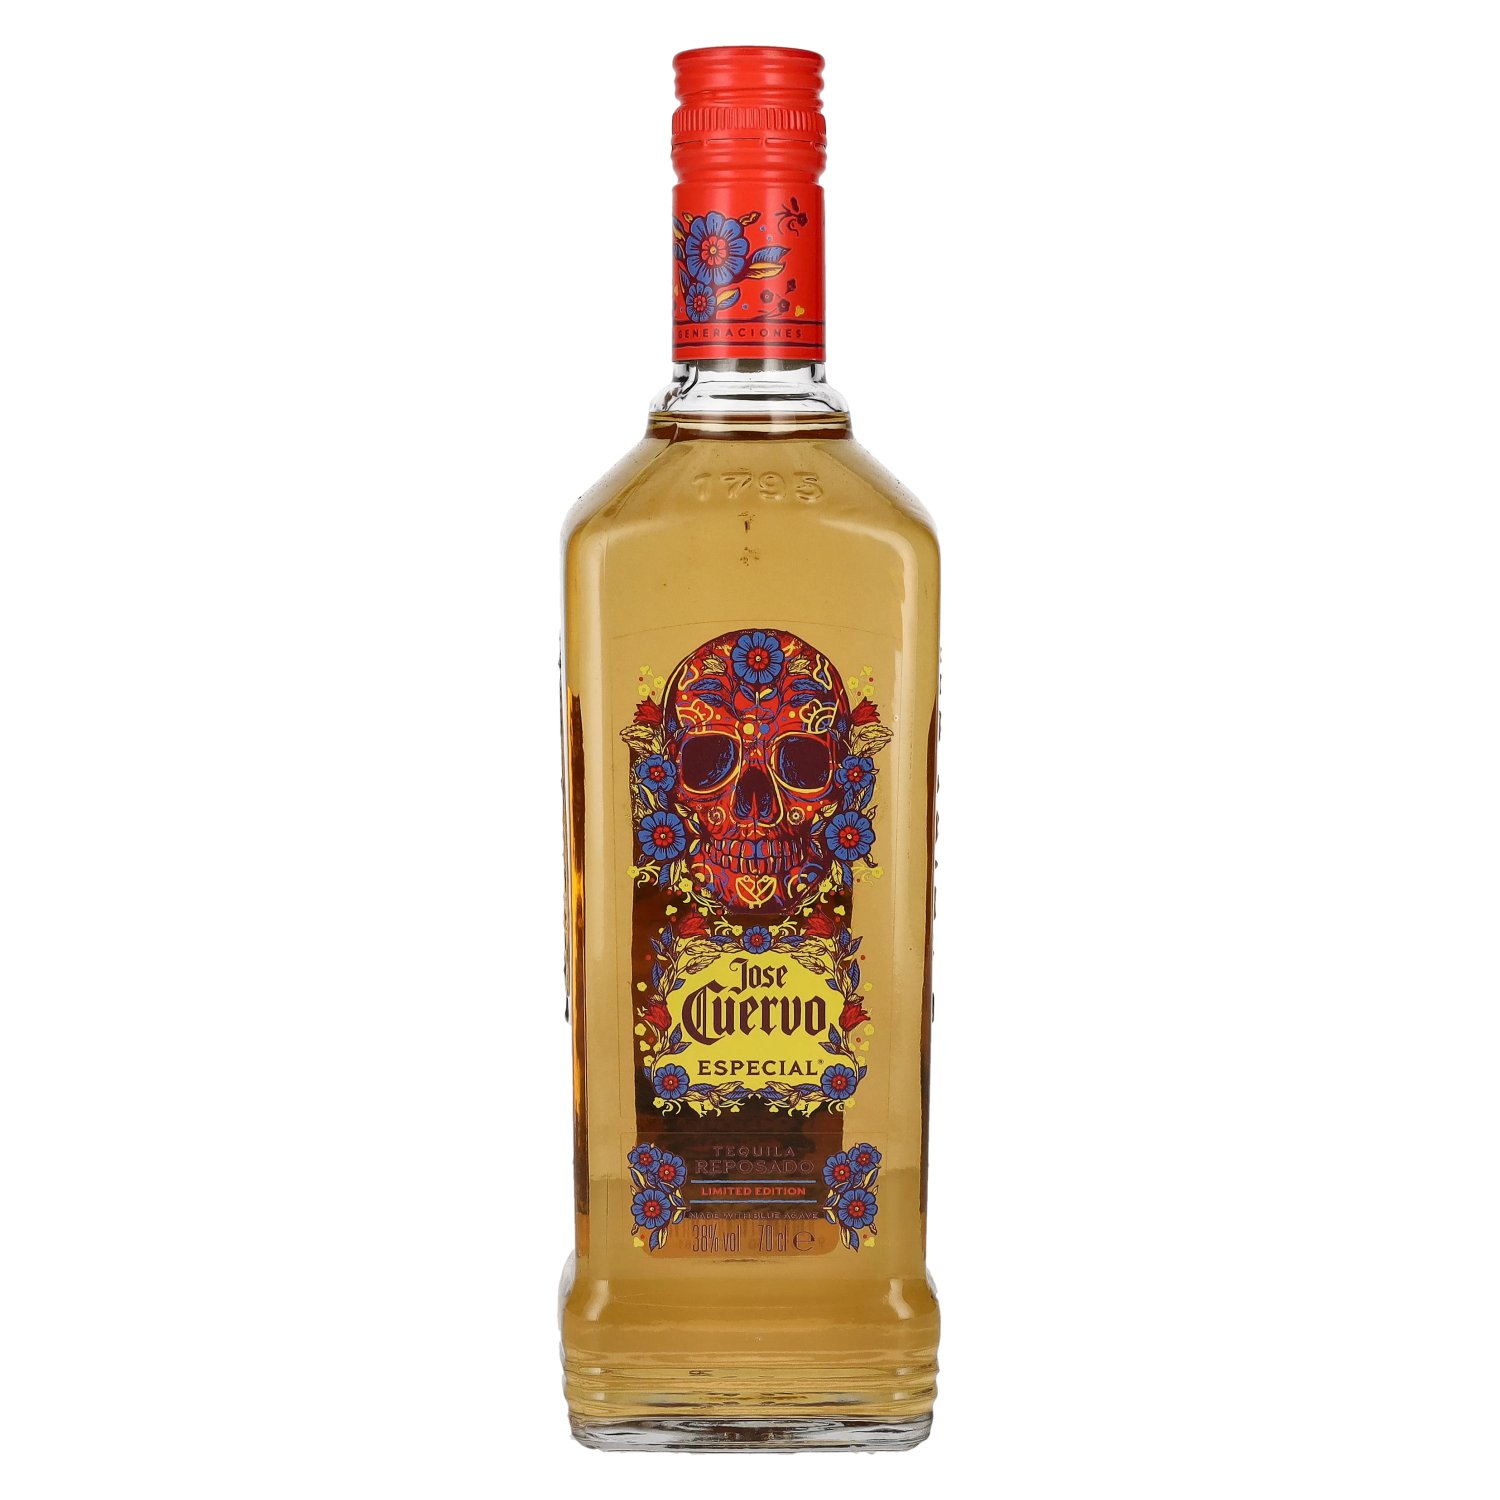 José Cuervo 38% Reposado Dead Vol. of Edition Limited 0,7l the Day Tequila Especial